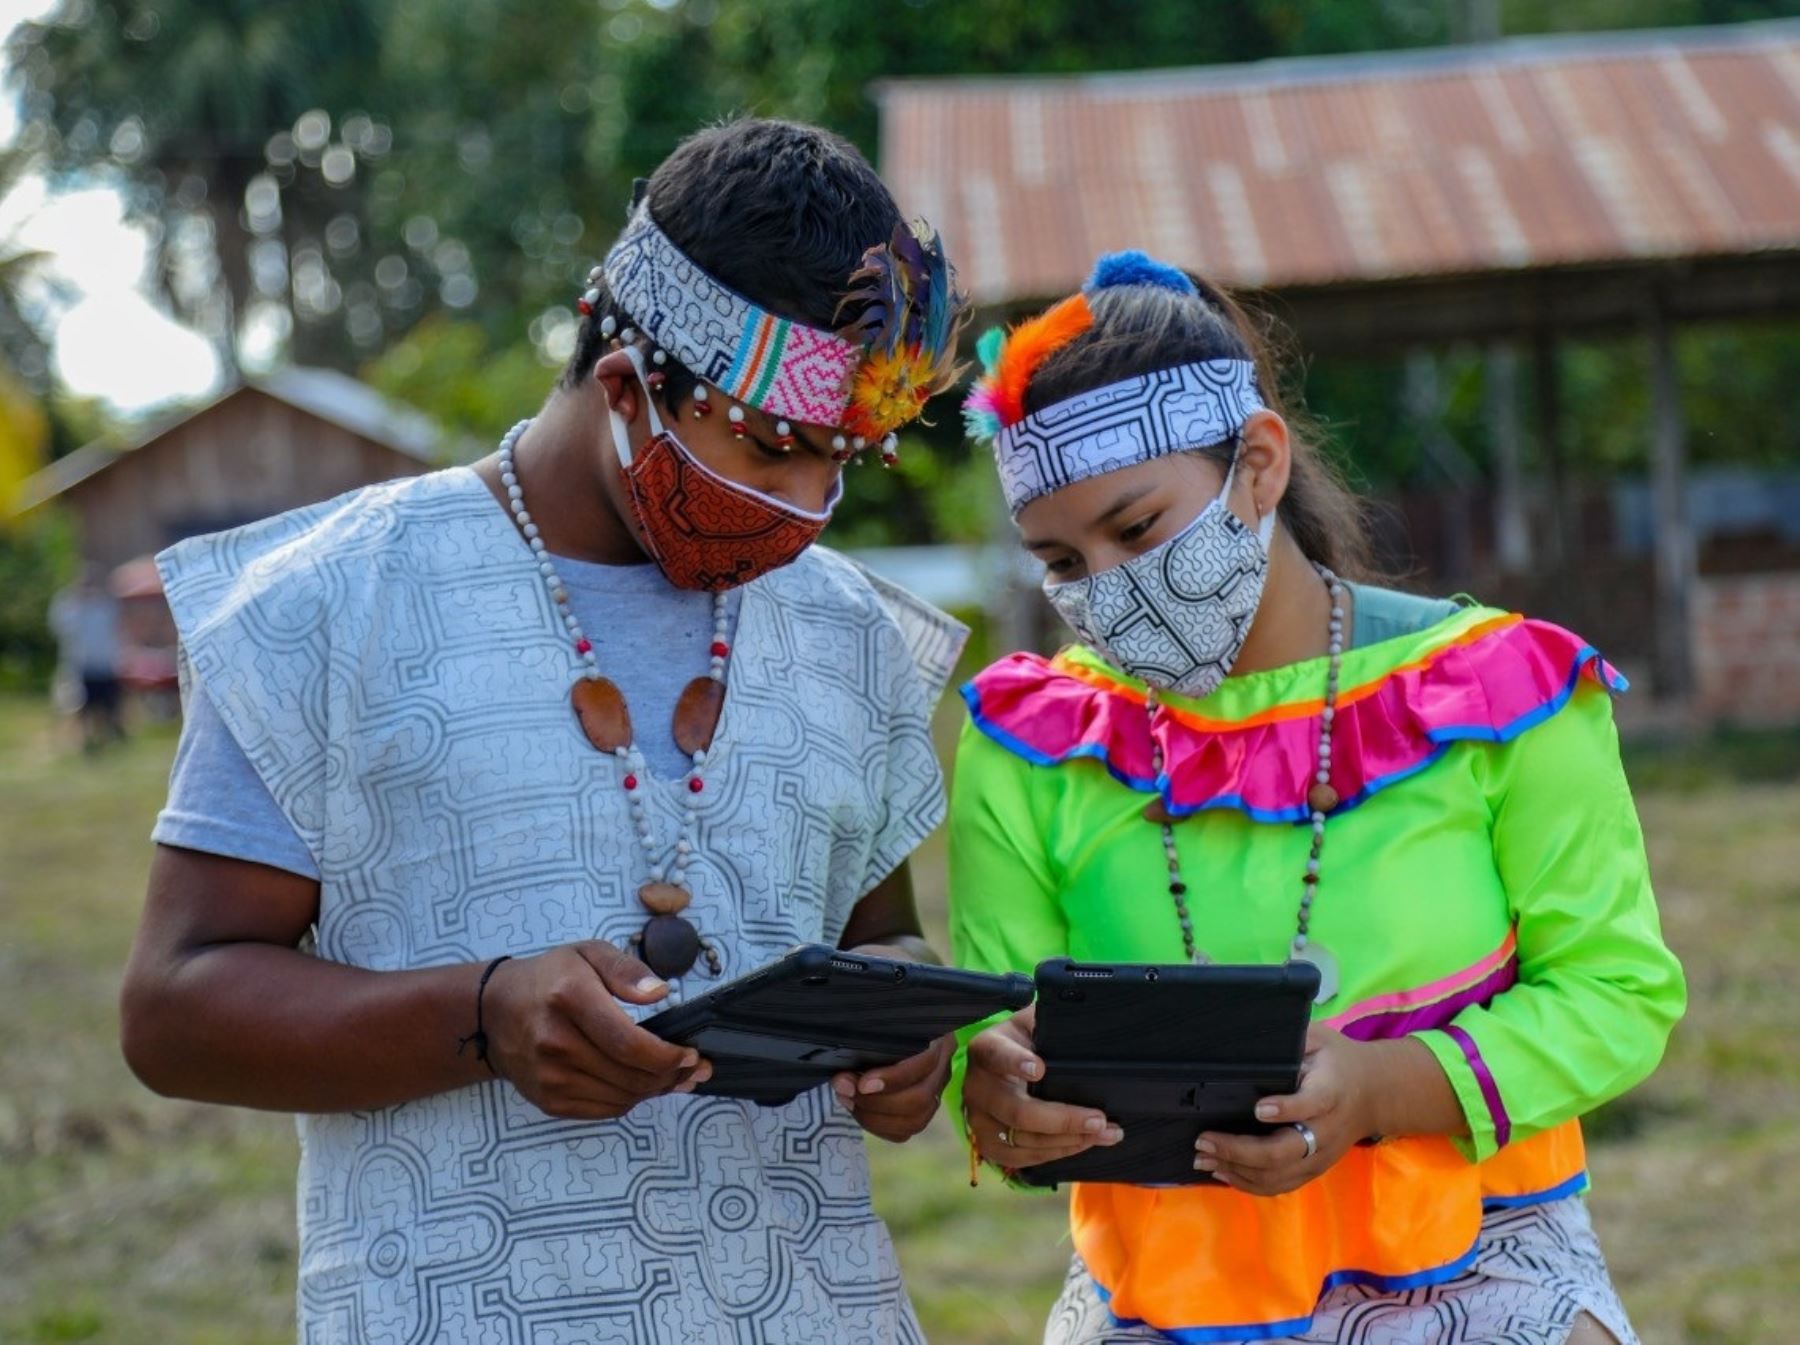 Más de 1,300 instituciones públicas de cuatro regiones amazónicas ya están conectadas a internet gracias a iniciativa Conecta Selva que ejecuta Pronatel, destacó el MTC. Foto: ANDINA/difusión.